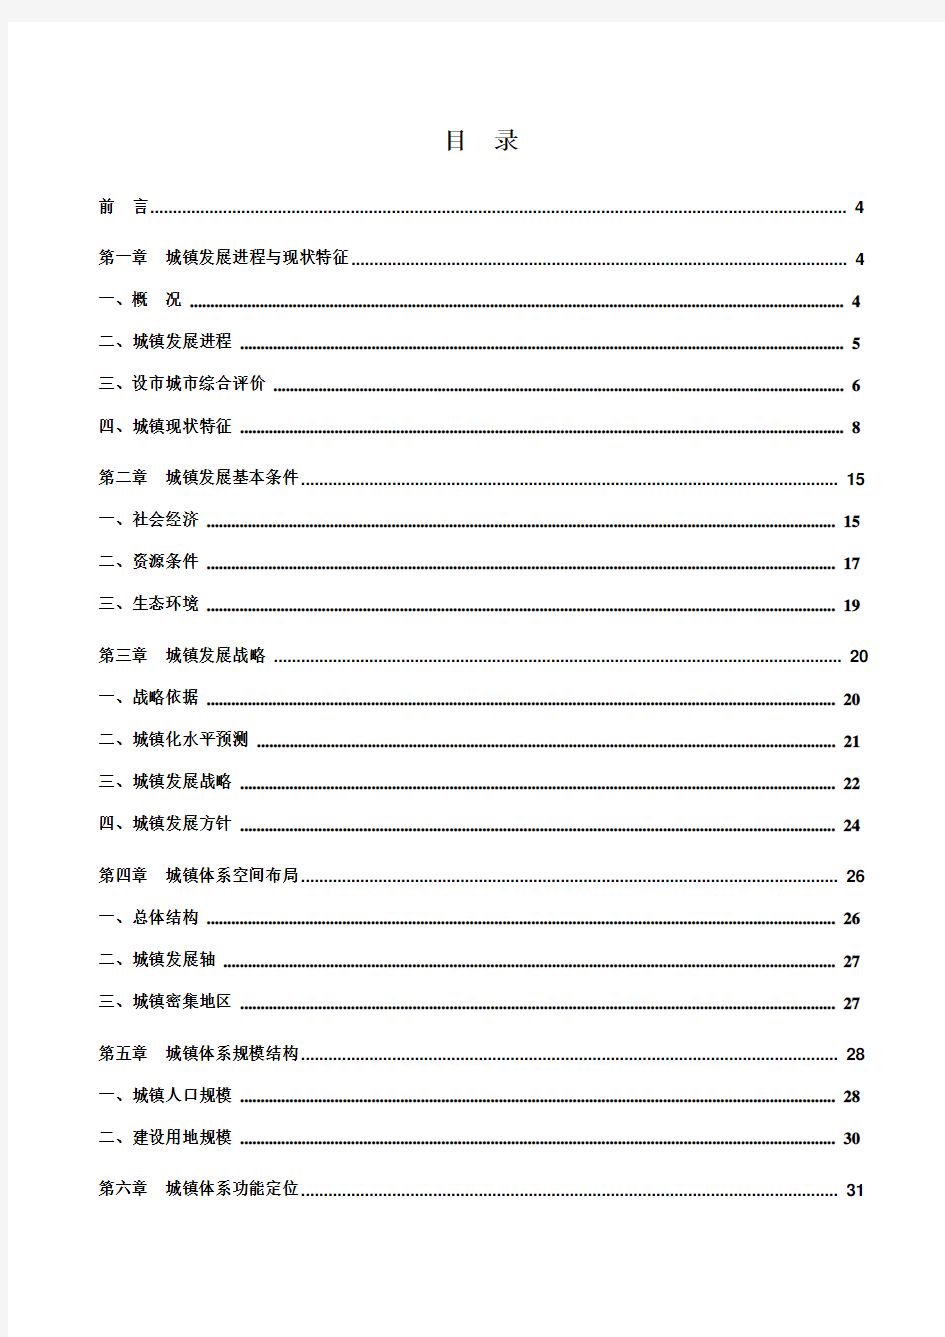 湖北省城镇体系规划(-2020)划